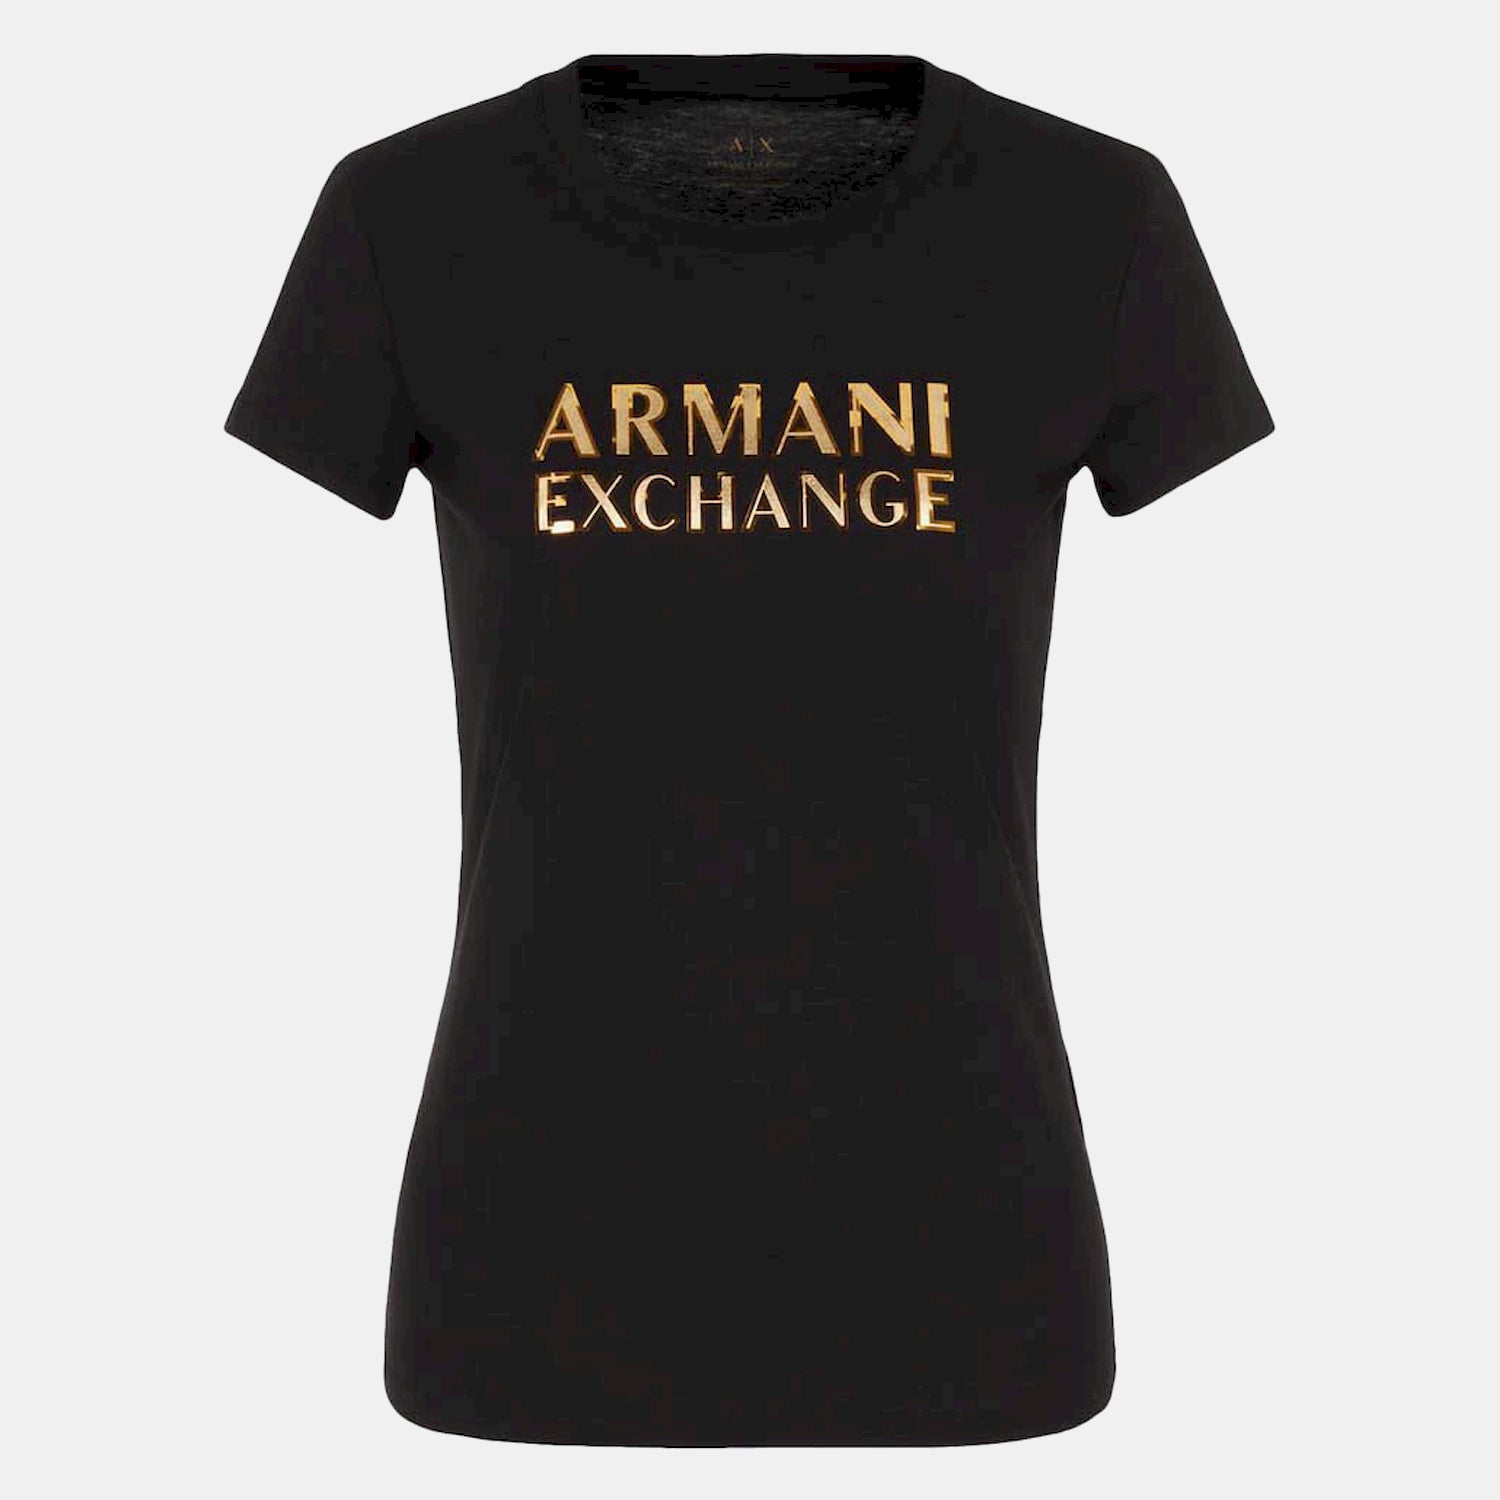 Armani Exchange T Shirt 6ryt07 Yj8qz Black Preto_shot2